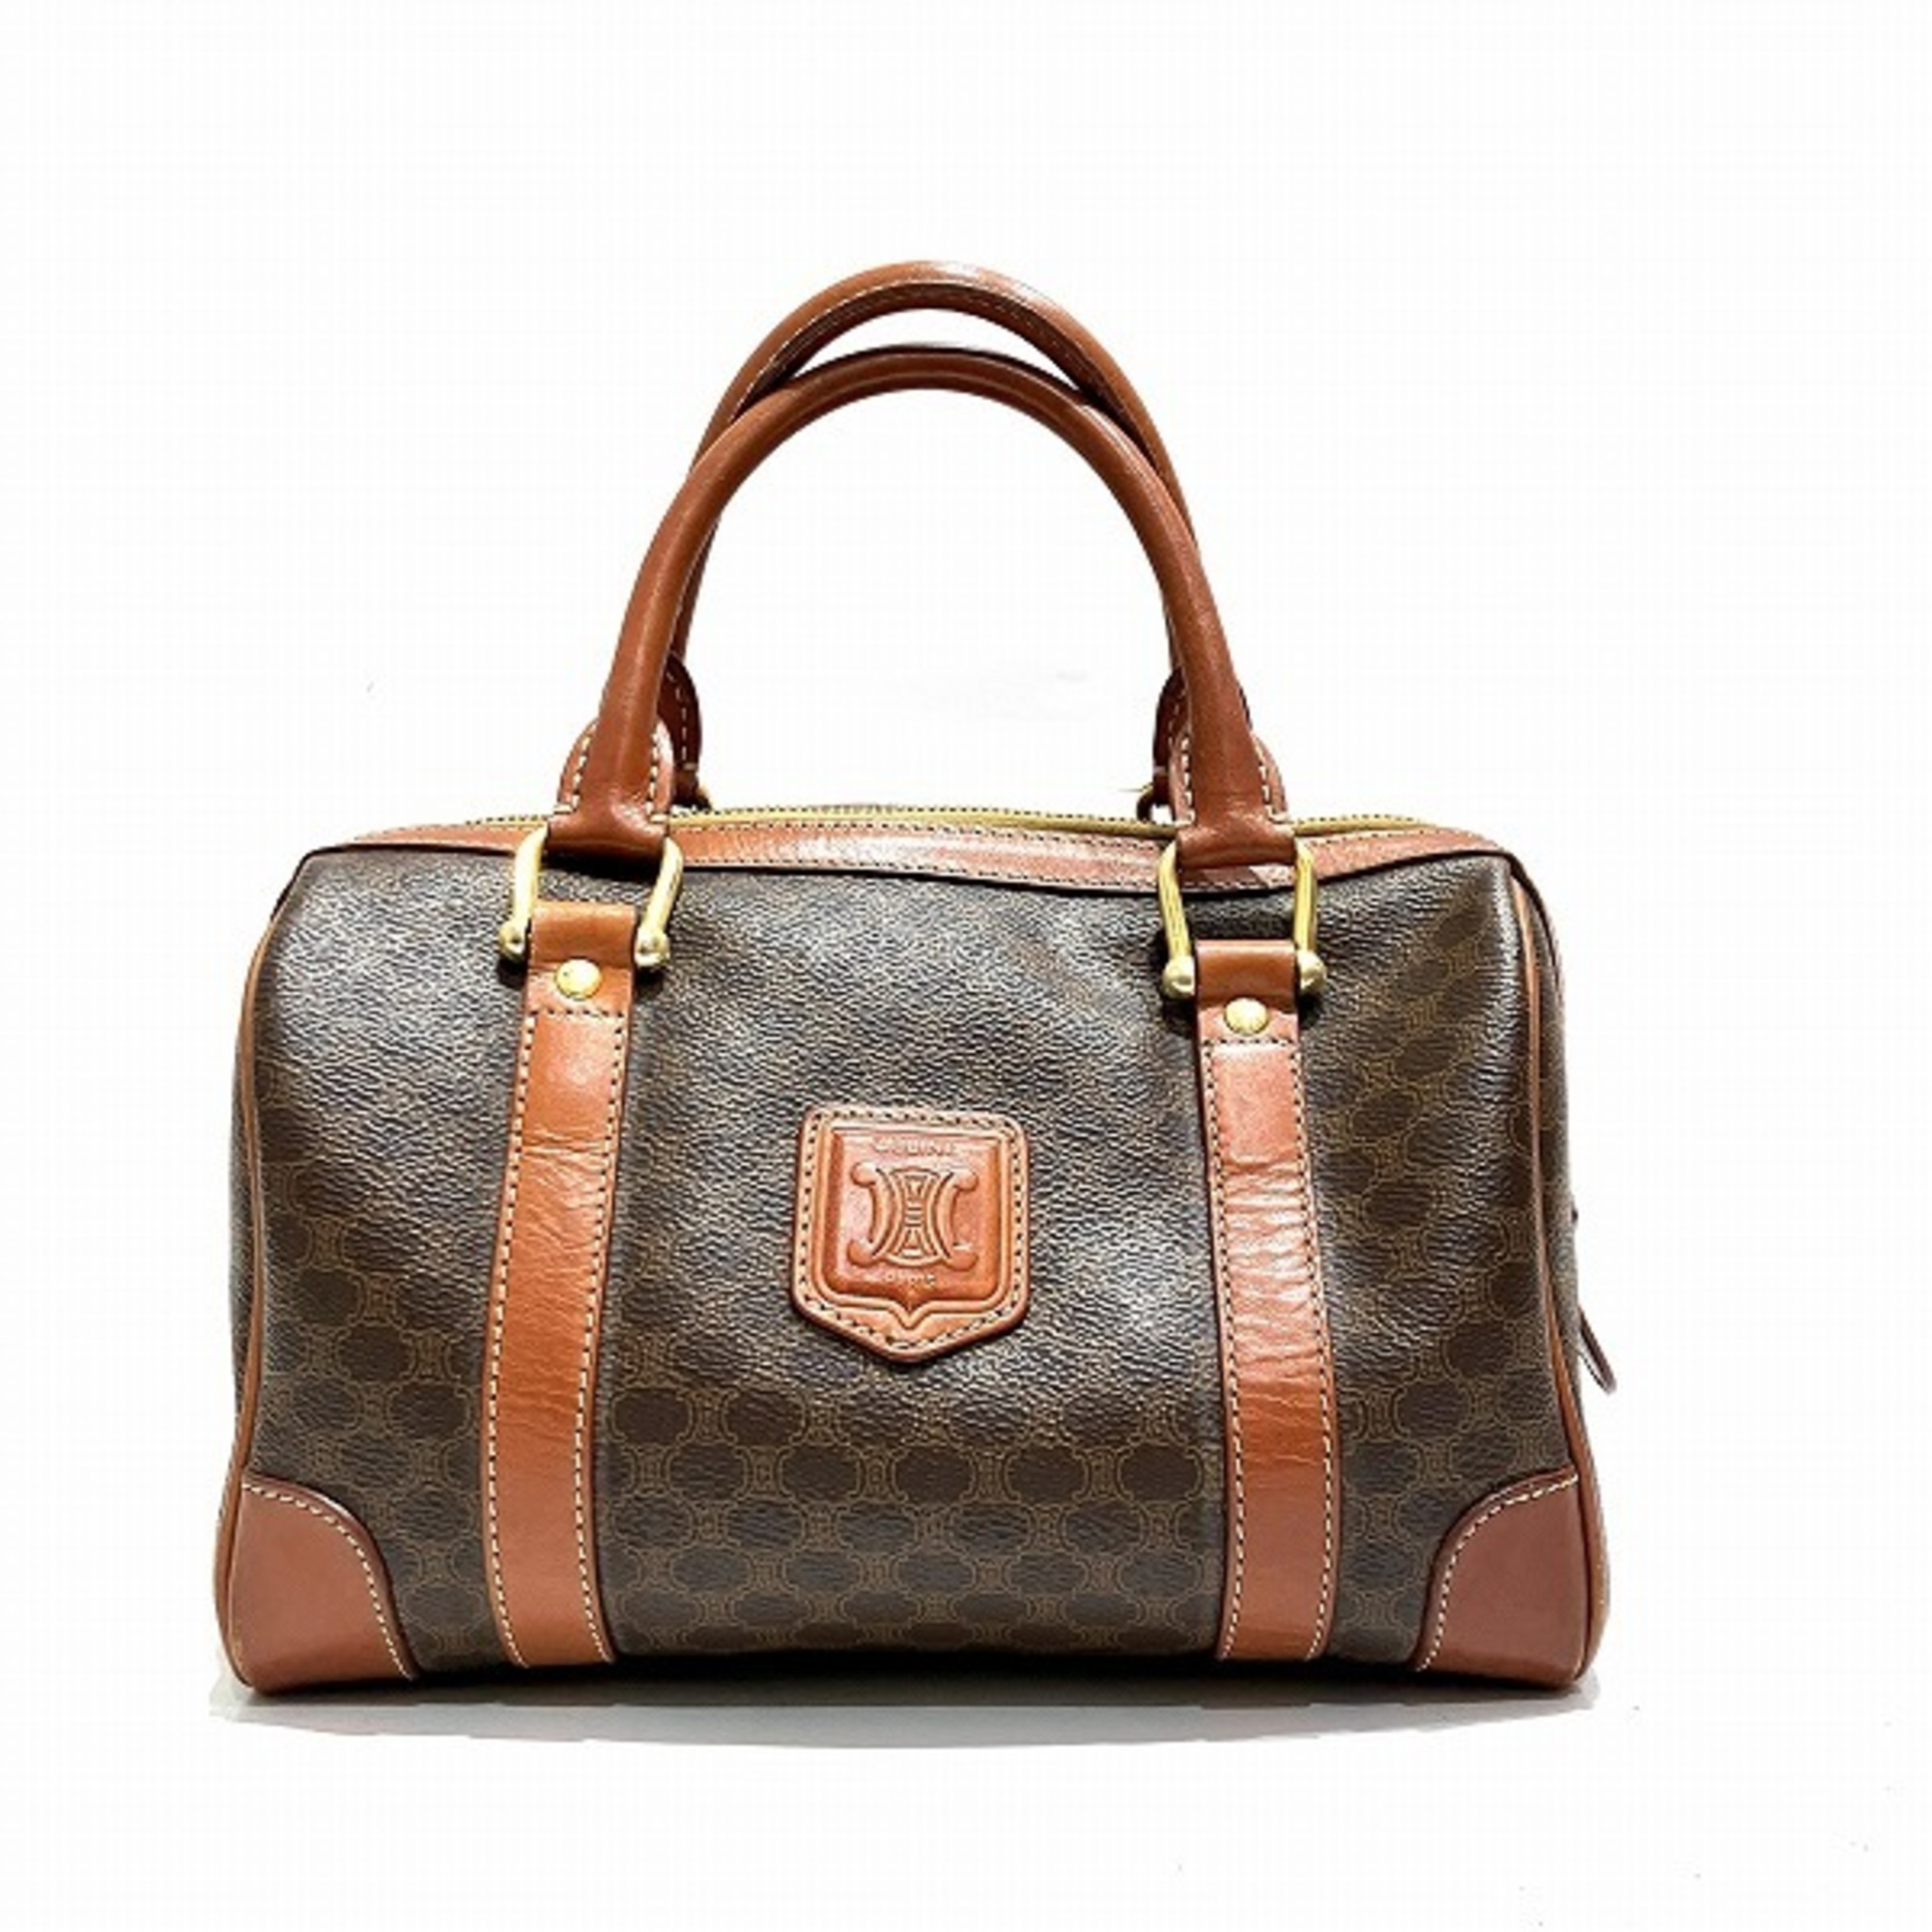 CELINE Macadam pattern bag handbag mini Boston ladies